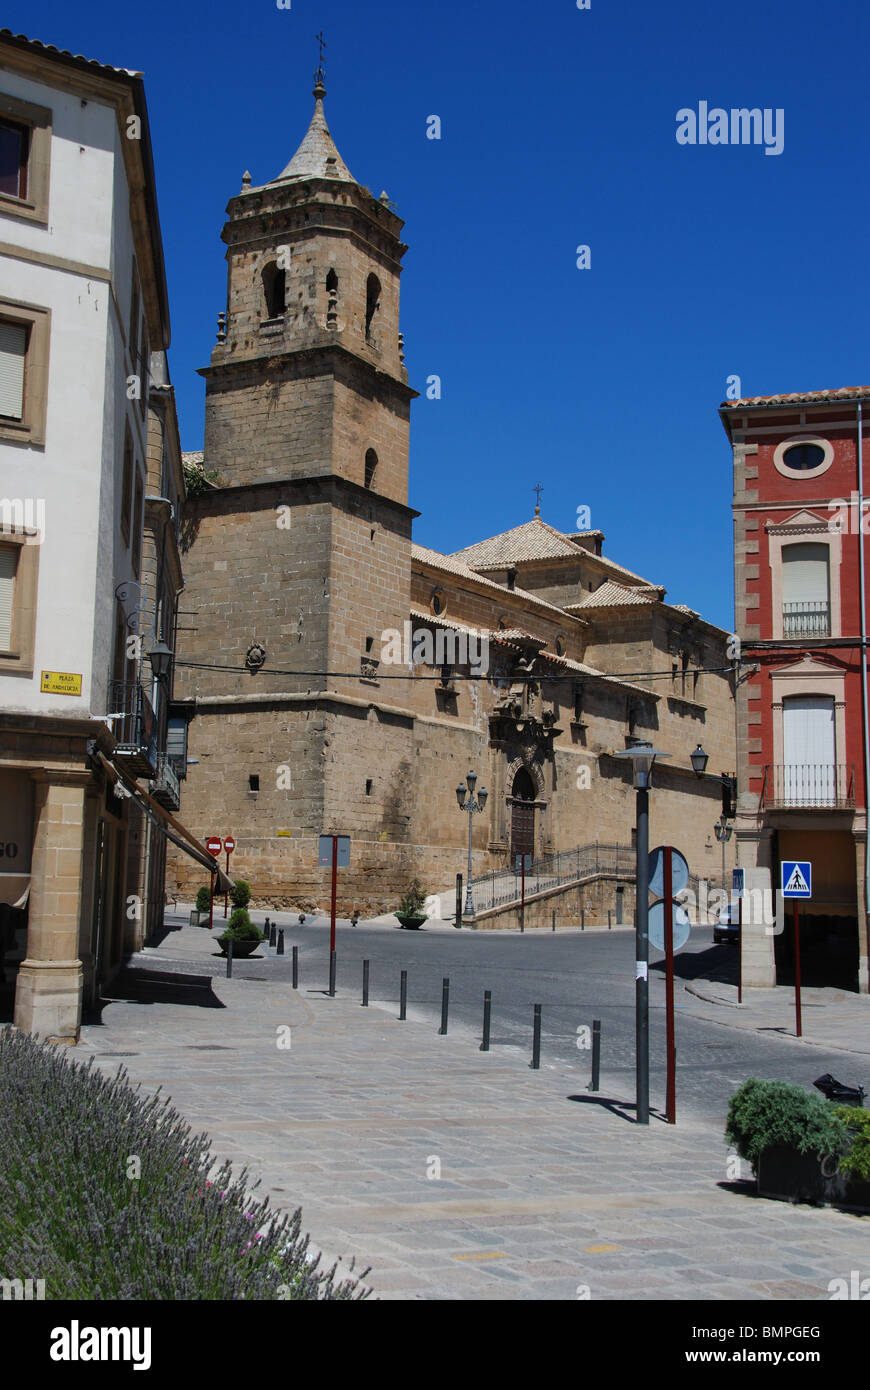 La Trinidad chiesa del convento, XVI - XVIII secolo, a Ubeda, Provincia di Jaen, Andalusia, Spagna, Europa occidentale. Foto Stock